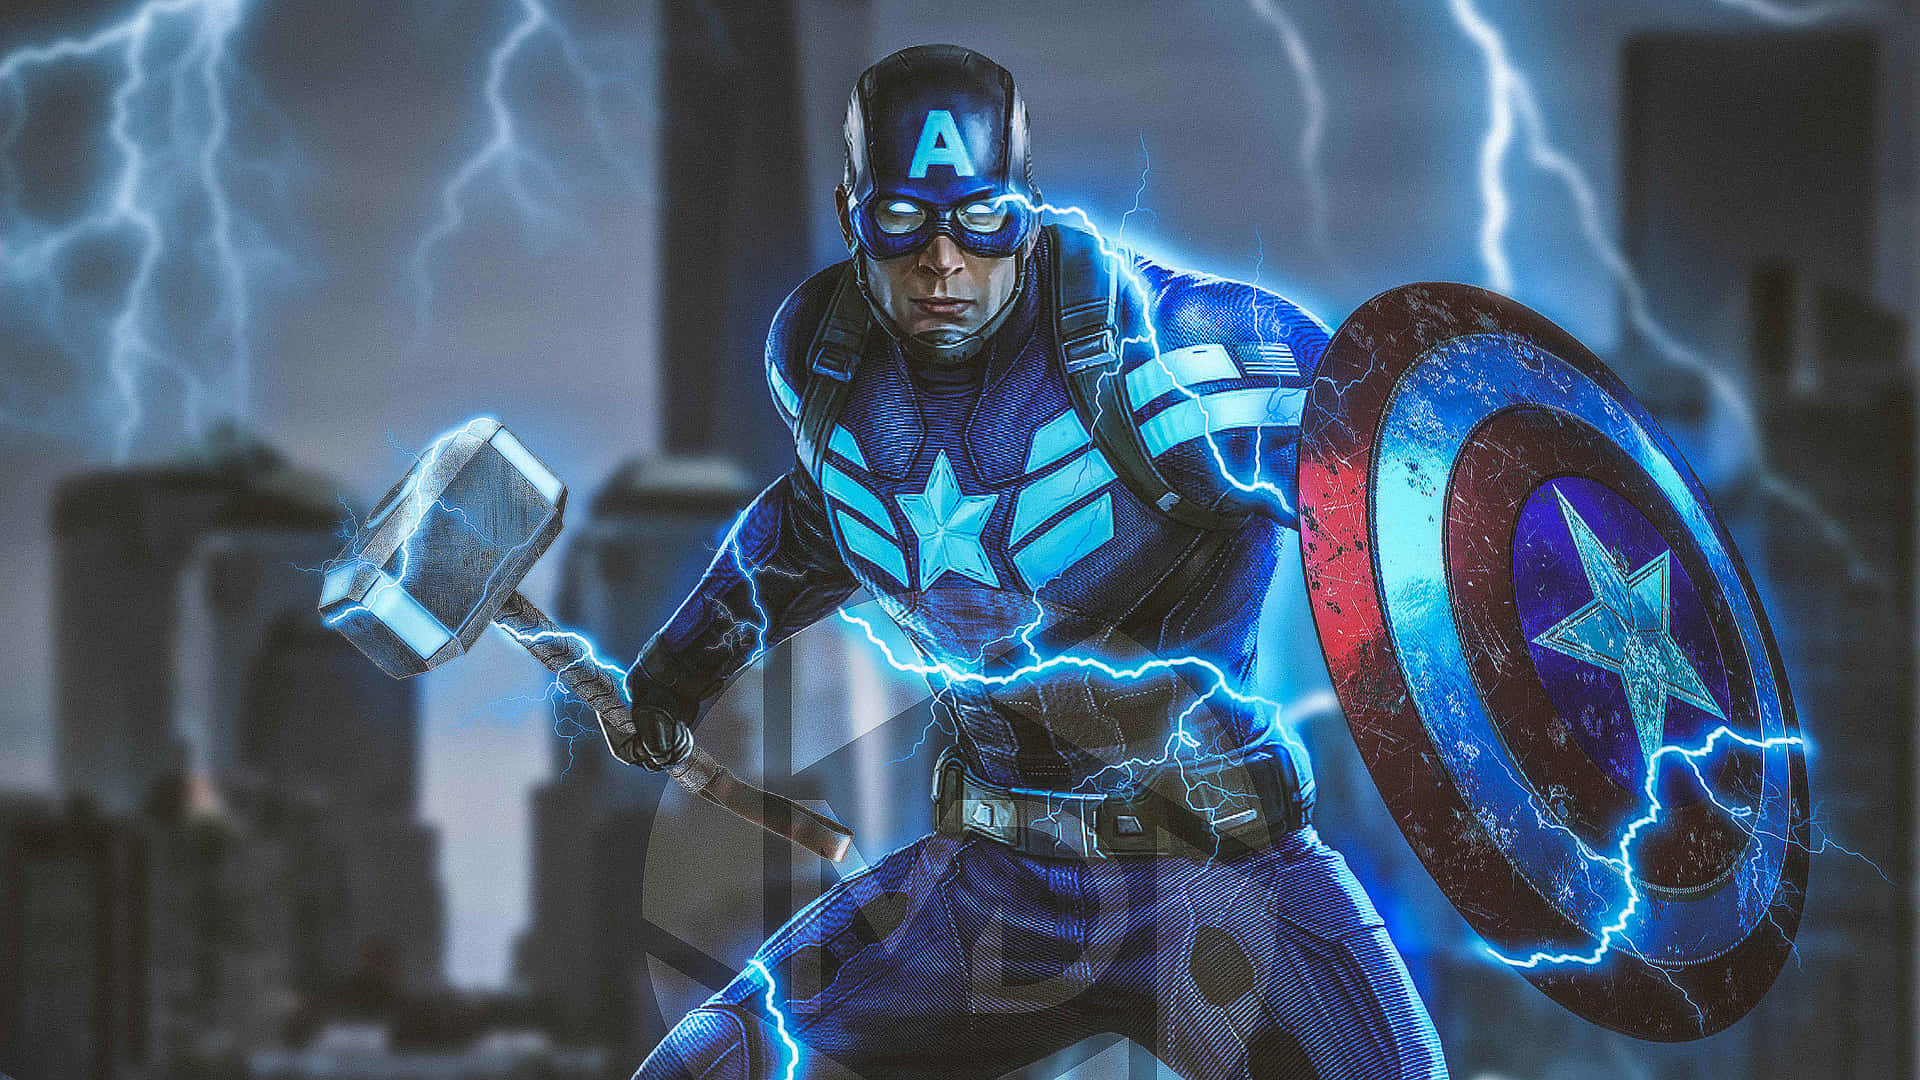 The Avengers Captain America 4K wallpaper